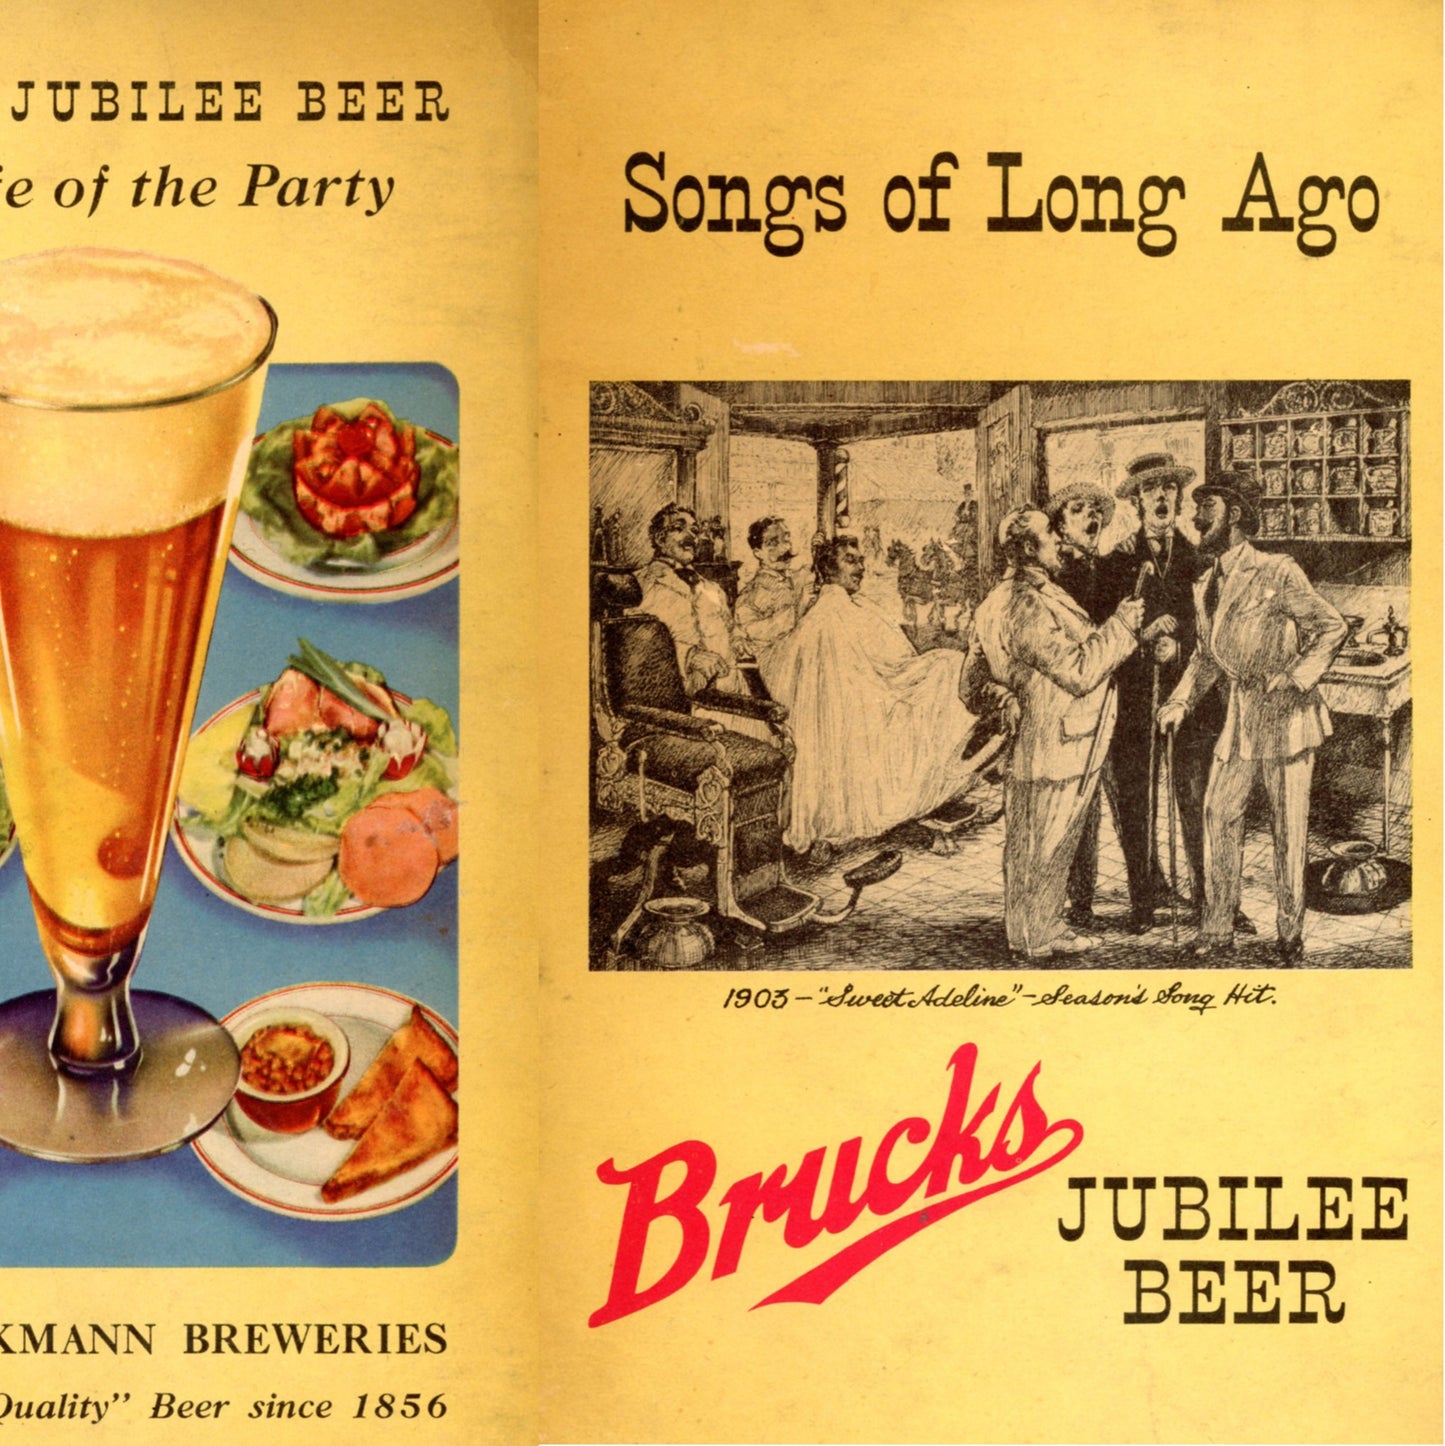 Songs of Long Ago BRUCKS JUBILEE BEER Songbook & Amber Bruckmann Beer Bottle Circa 1937 to 1945